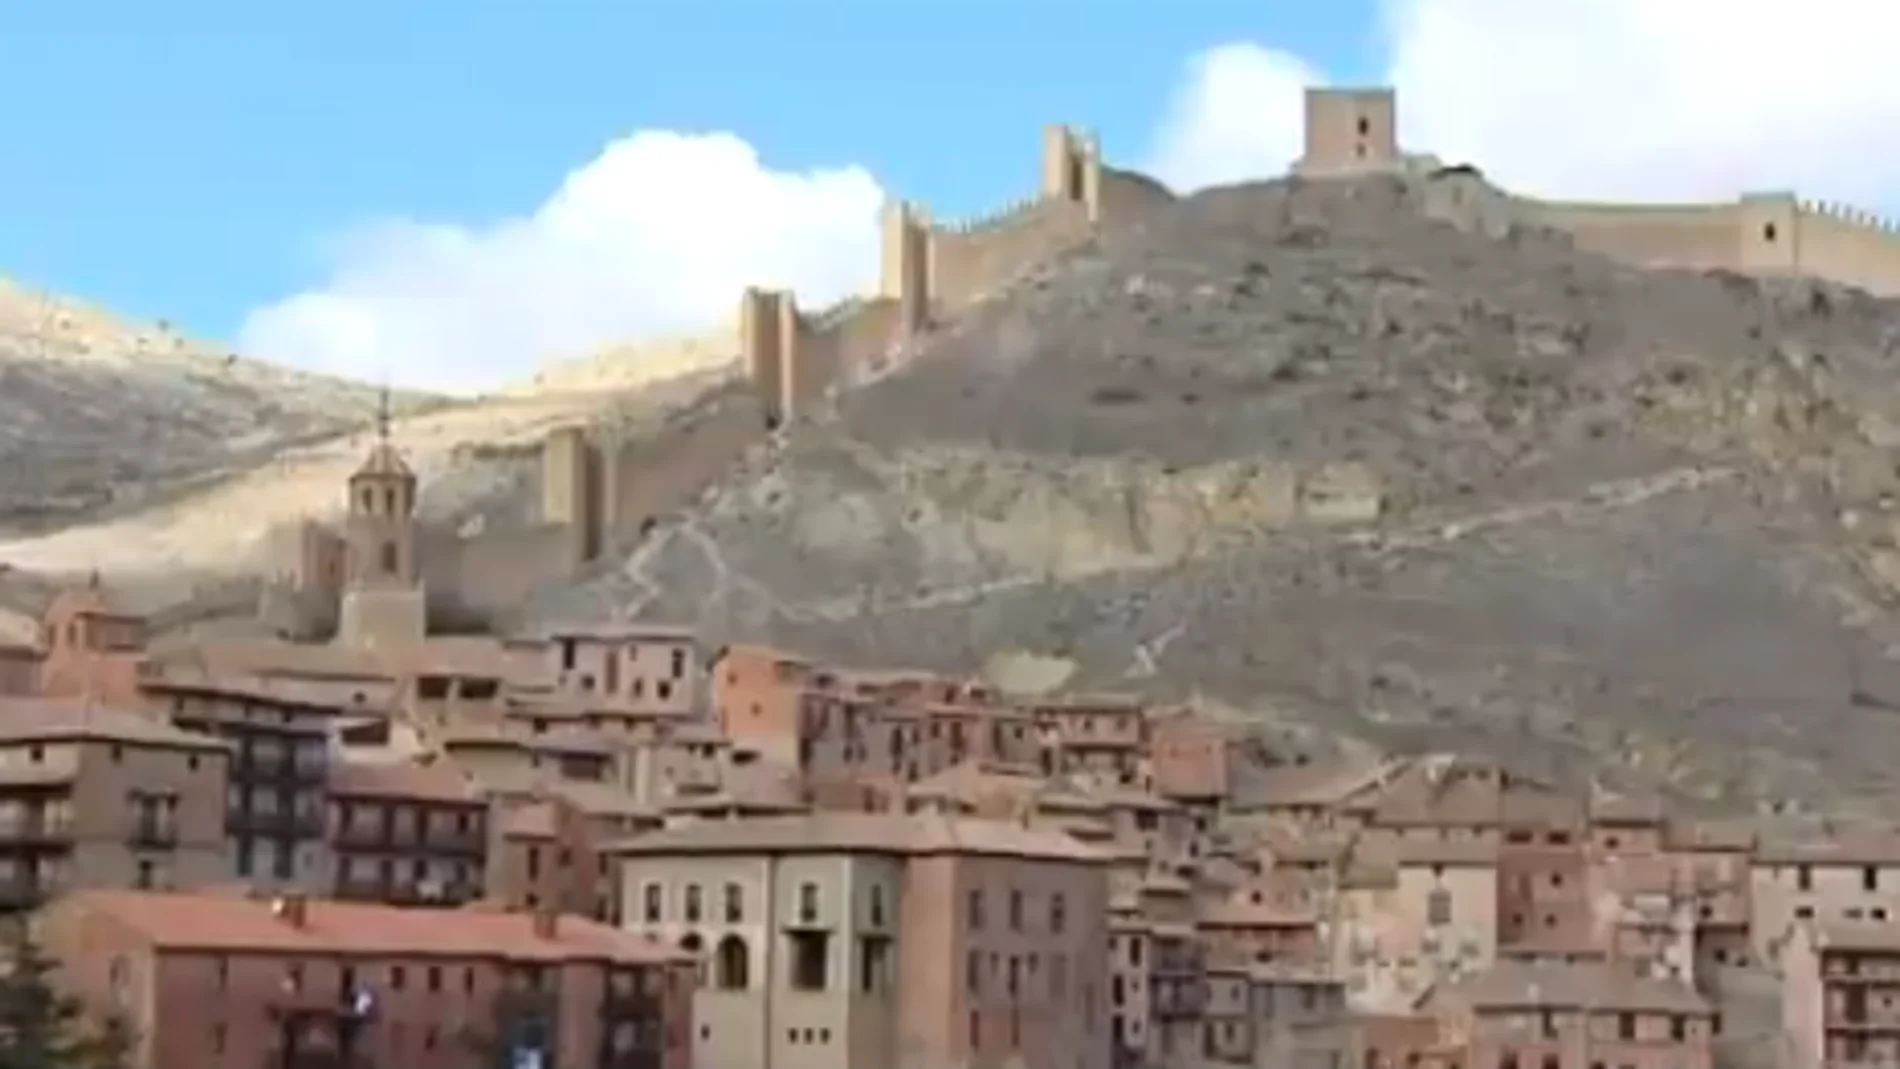 Turismo desde el móvil: visita cada rincón de Albarracín, Cuenca o Venecia gracia a la realidad virtual